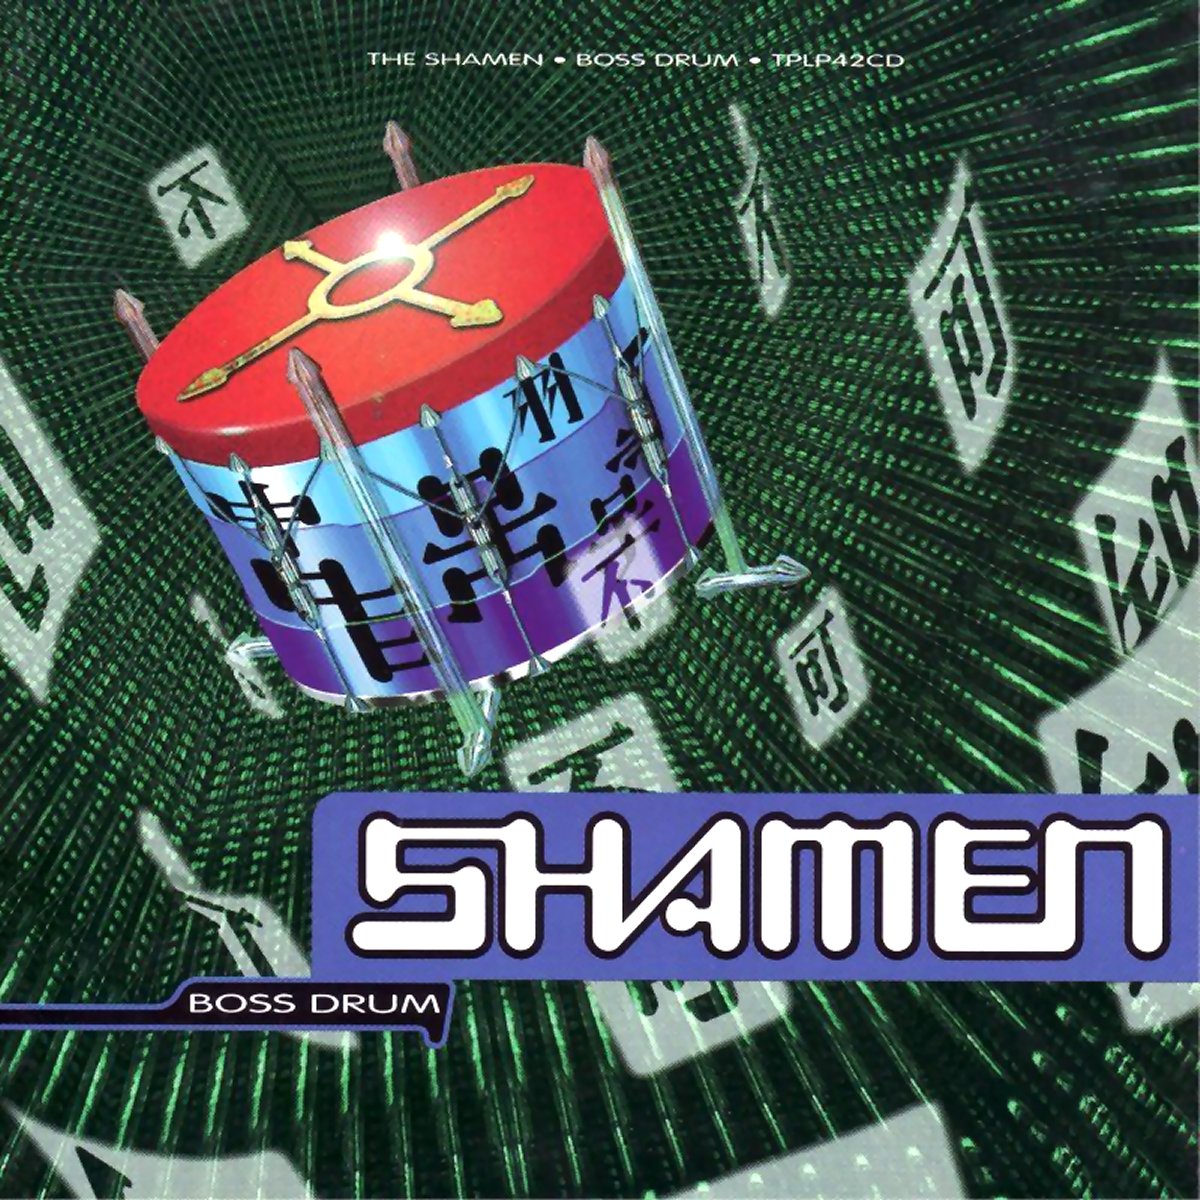 Boss Drum (album) — The Shamen | Last.fm